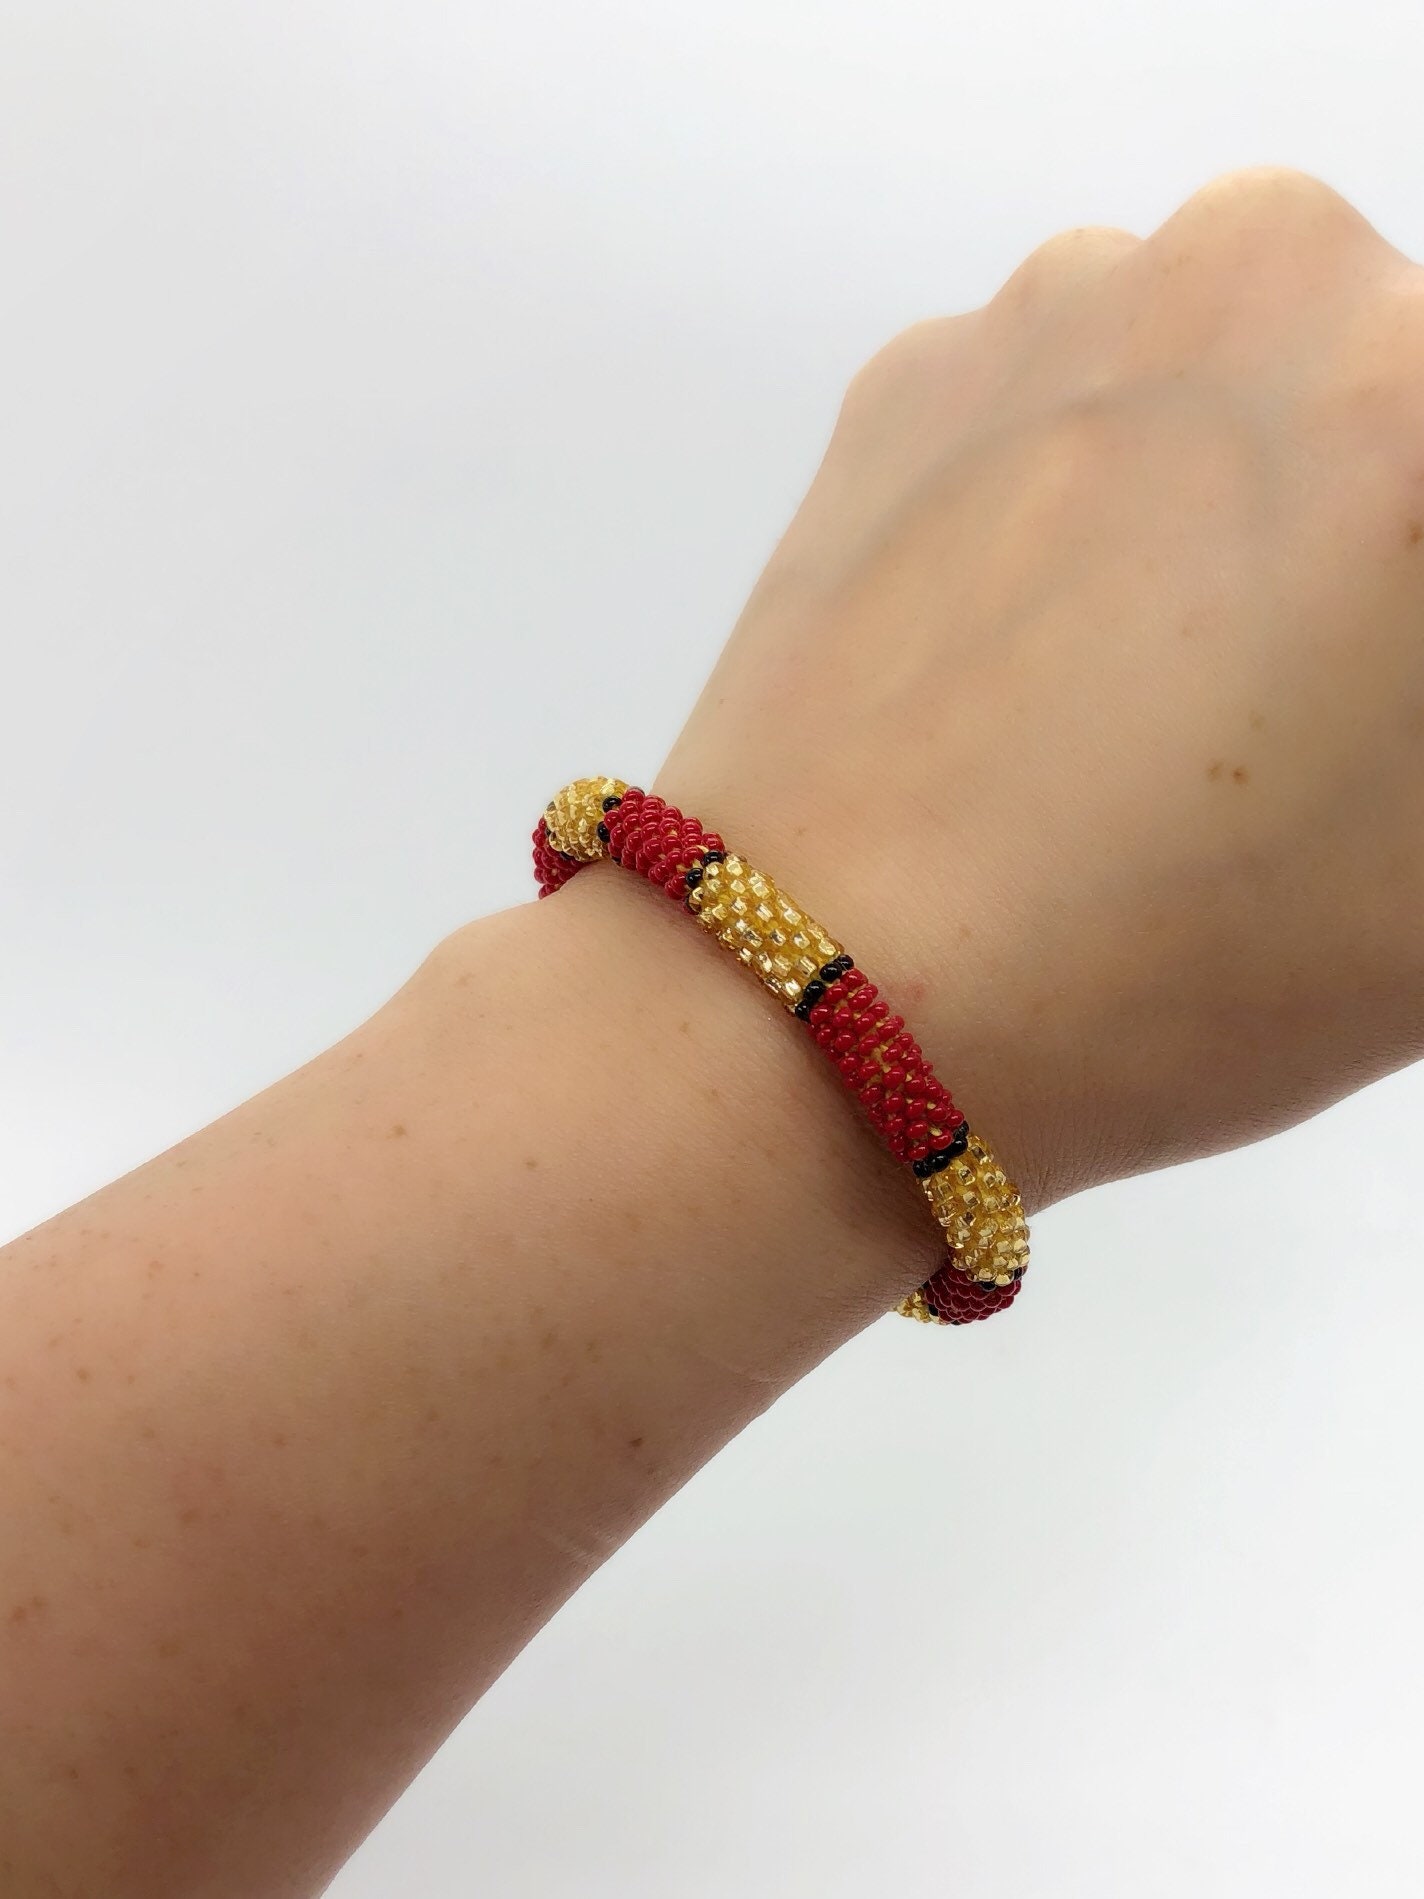 Roll On Beaded Bracelet - Red Gold Black - Handmade - Native Beadwork ...